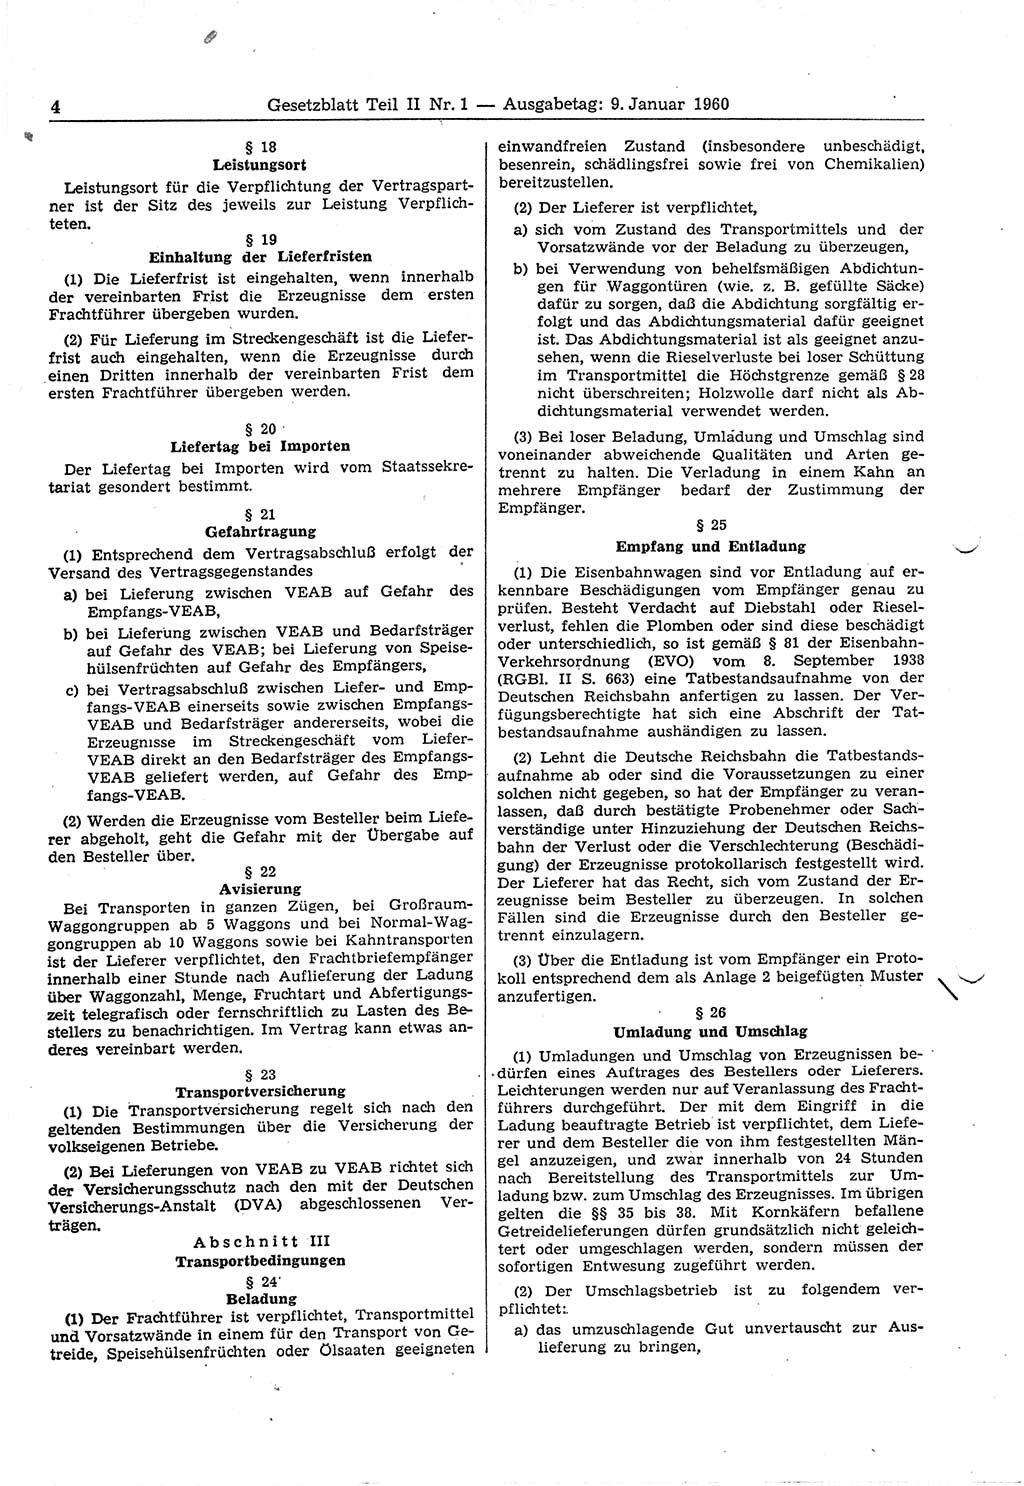 Gesetzblatt (GBl.) der Deutschen Demokratischen Republik (DDR) Teil ⅠⅠ 1960, Seite 4 (GBl. DDR ⅠⅠ 1960, S. 4)